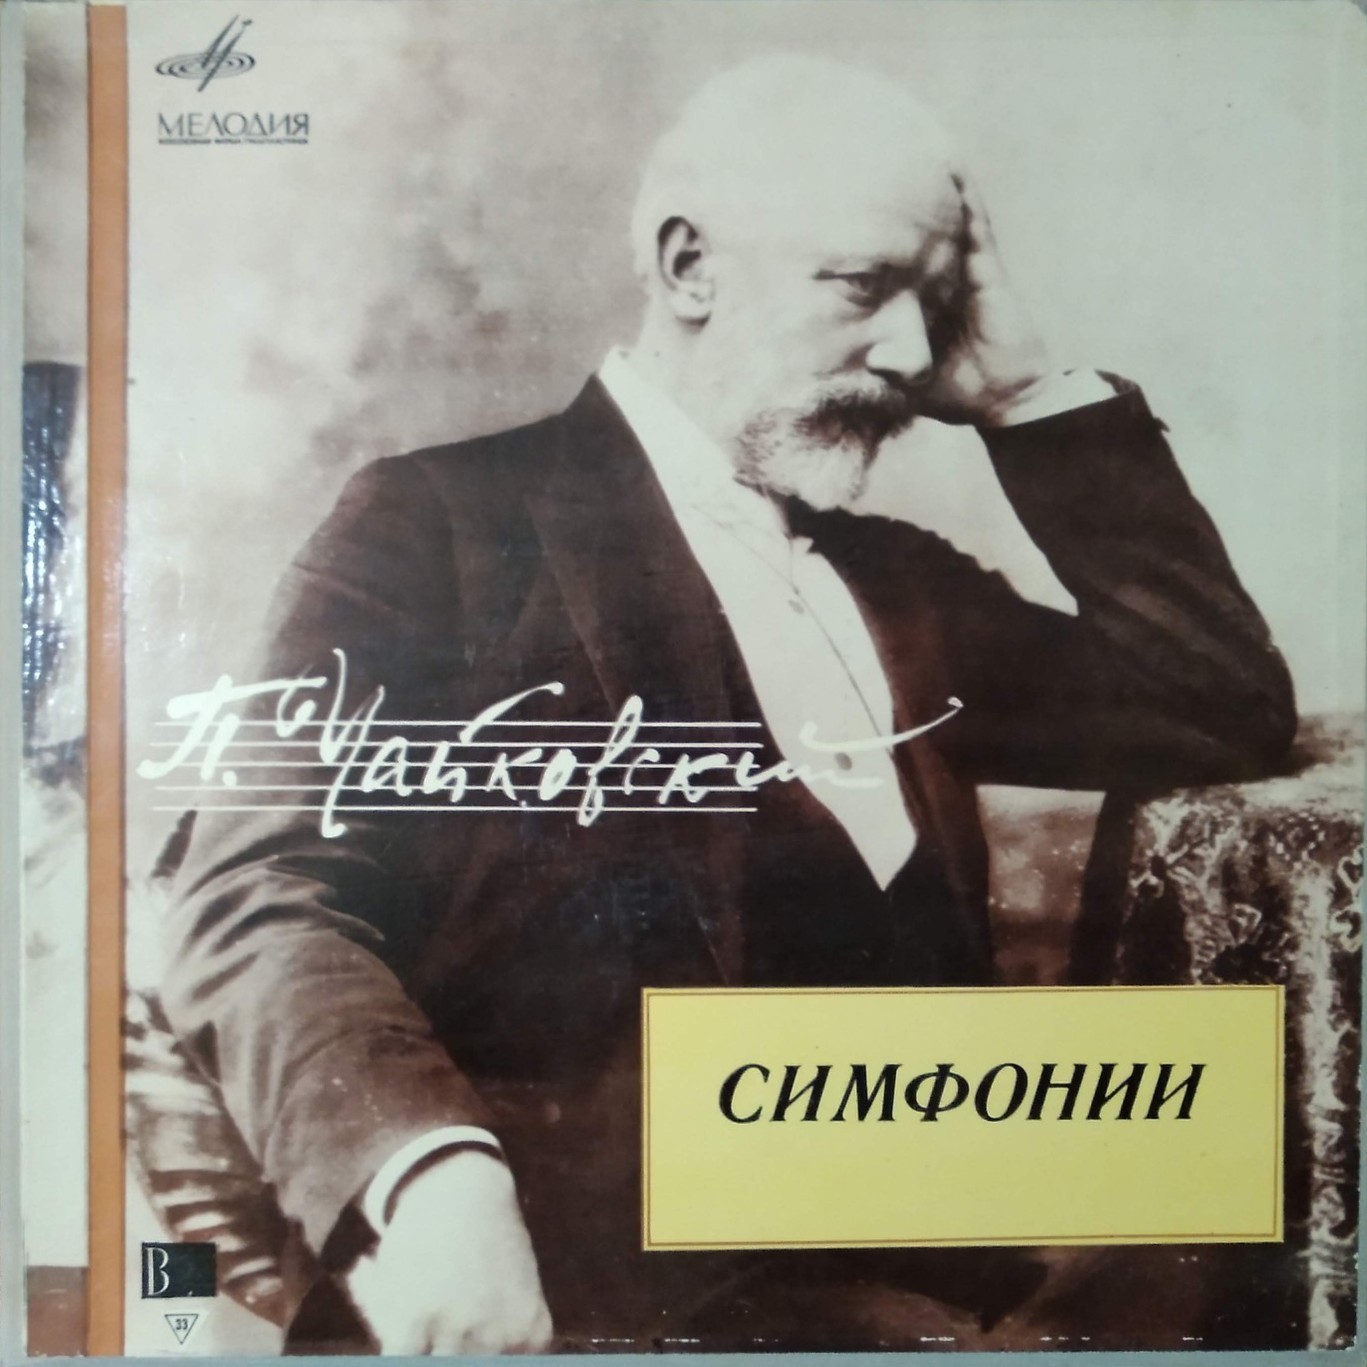 Чайковский П.: Шесть симфоний (Е. Светланов, ГСО СССР)